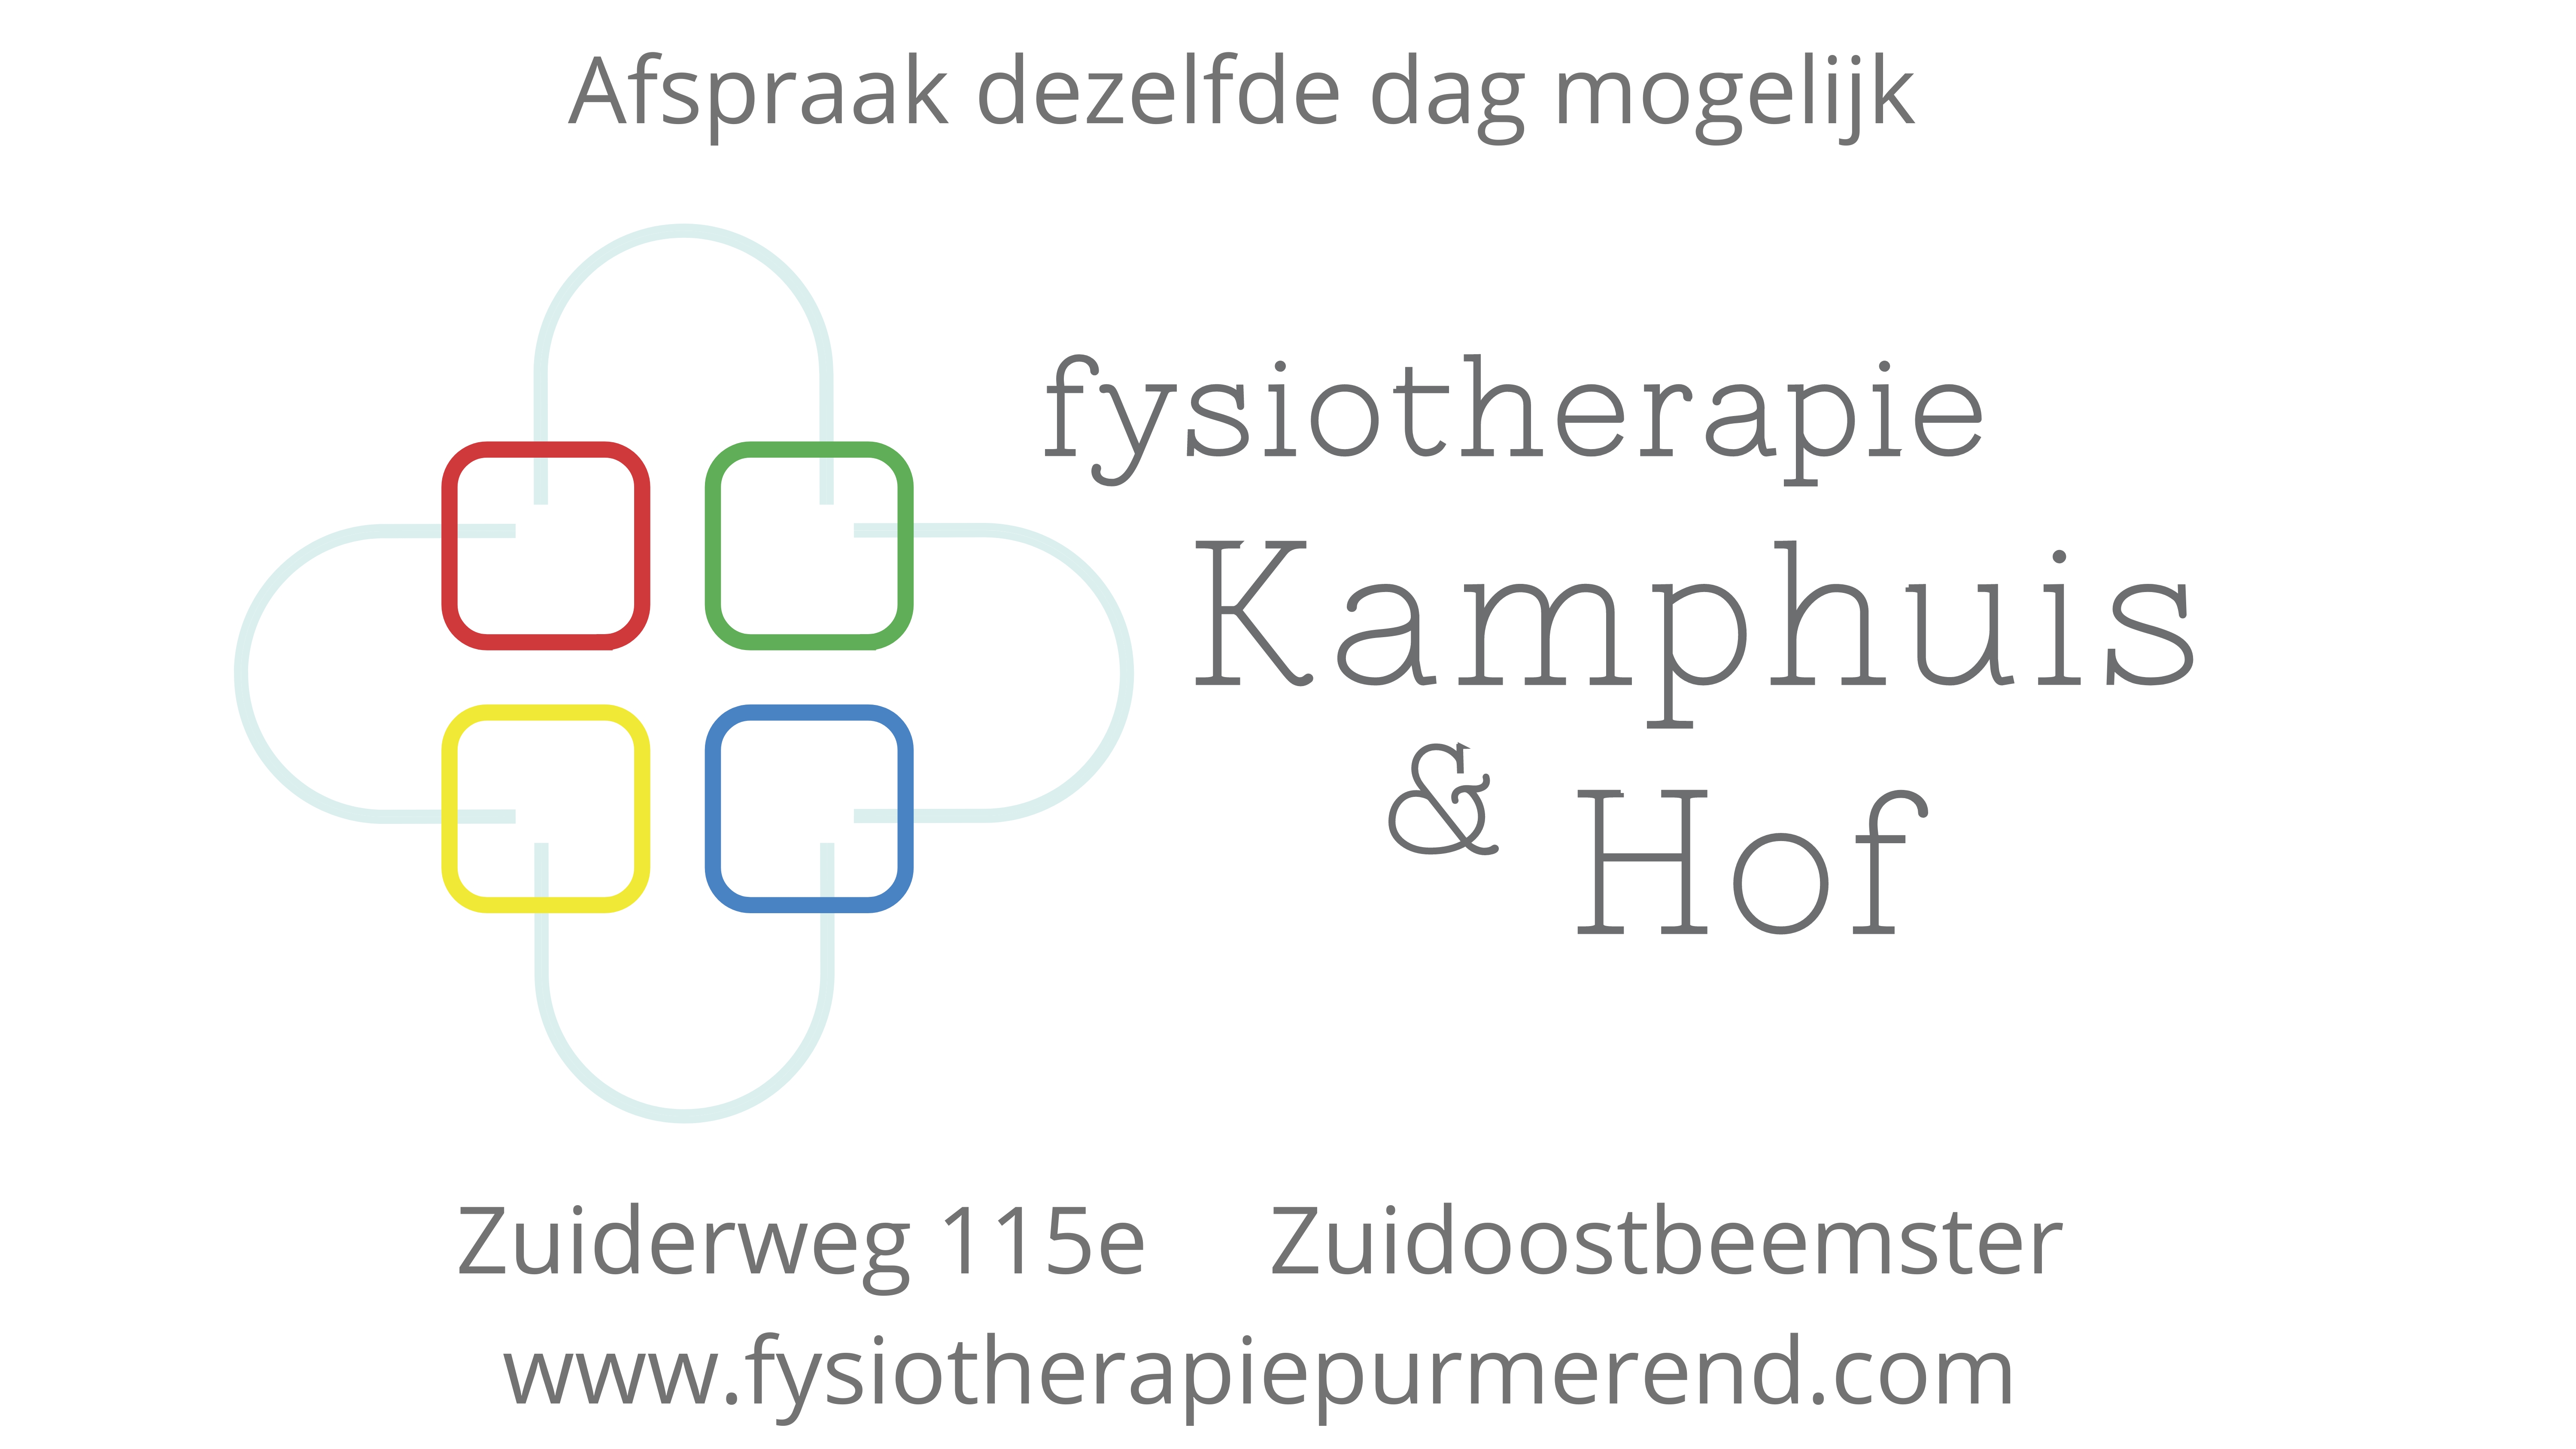 Fysiotherapie Kamphuis & Hof